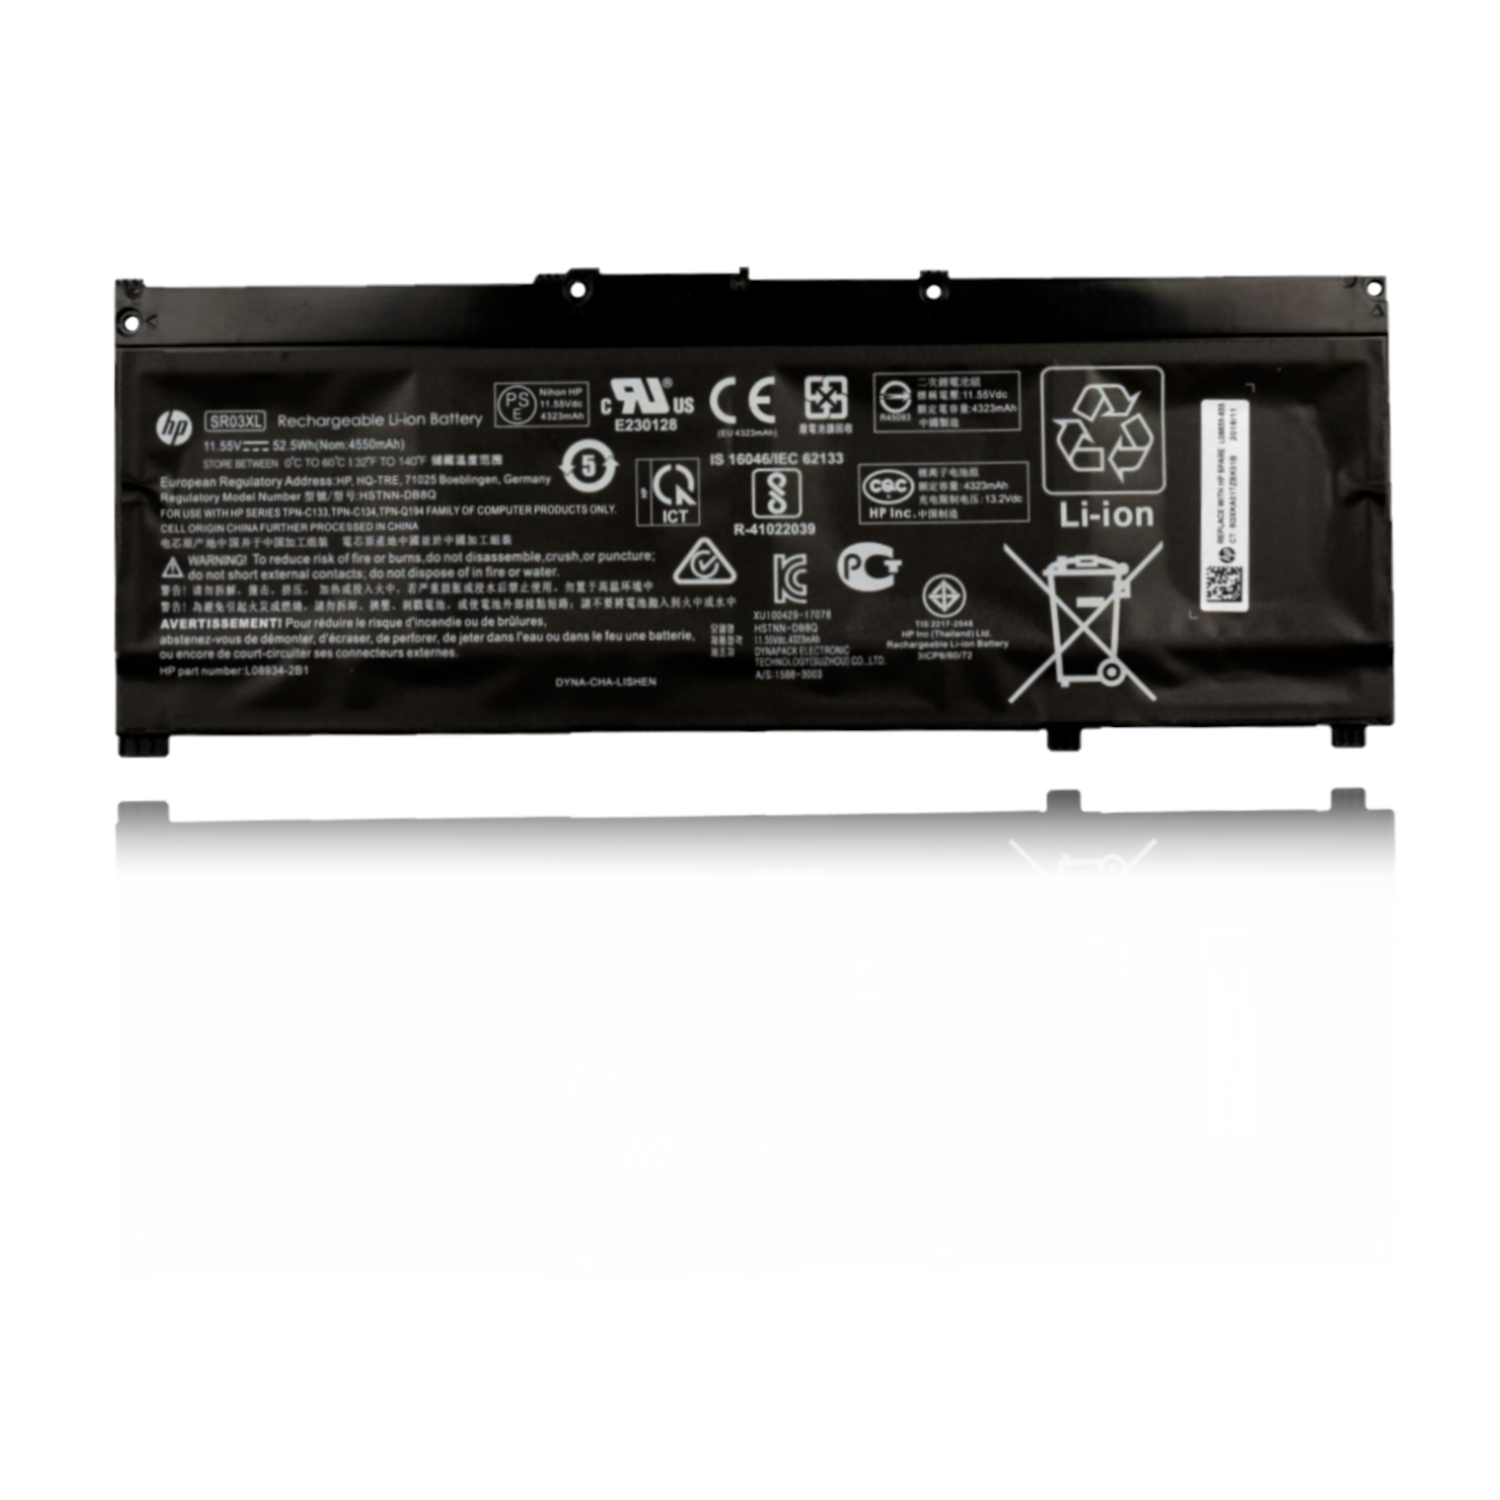 Battery for HP Omen DC-0005ne